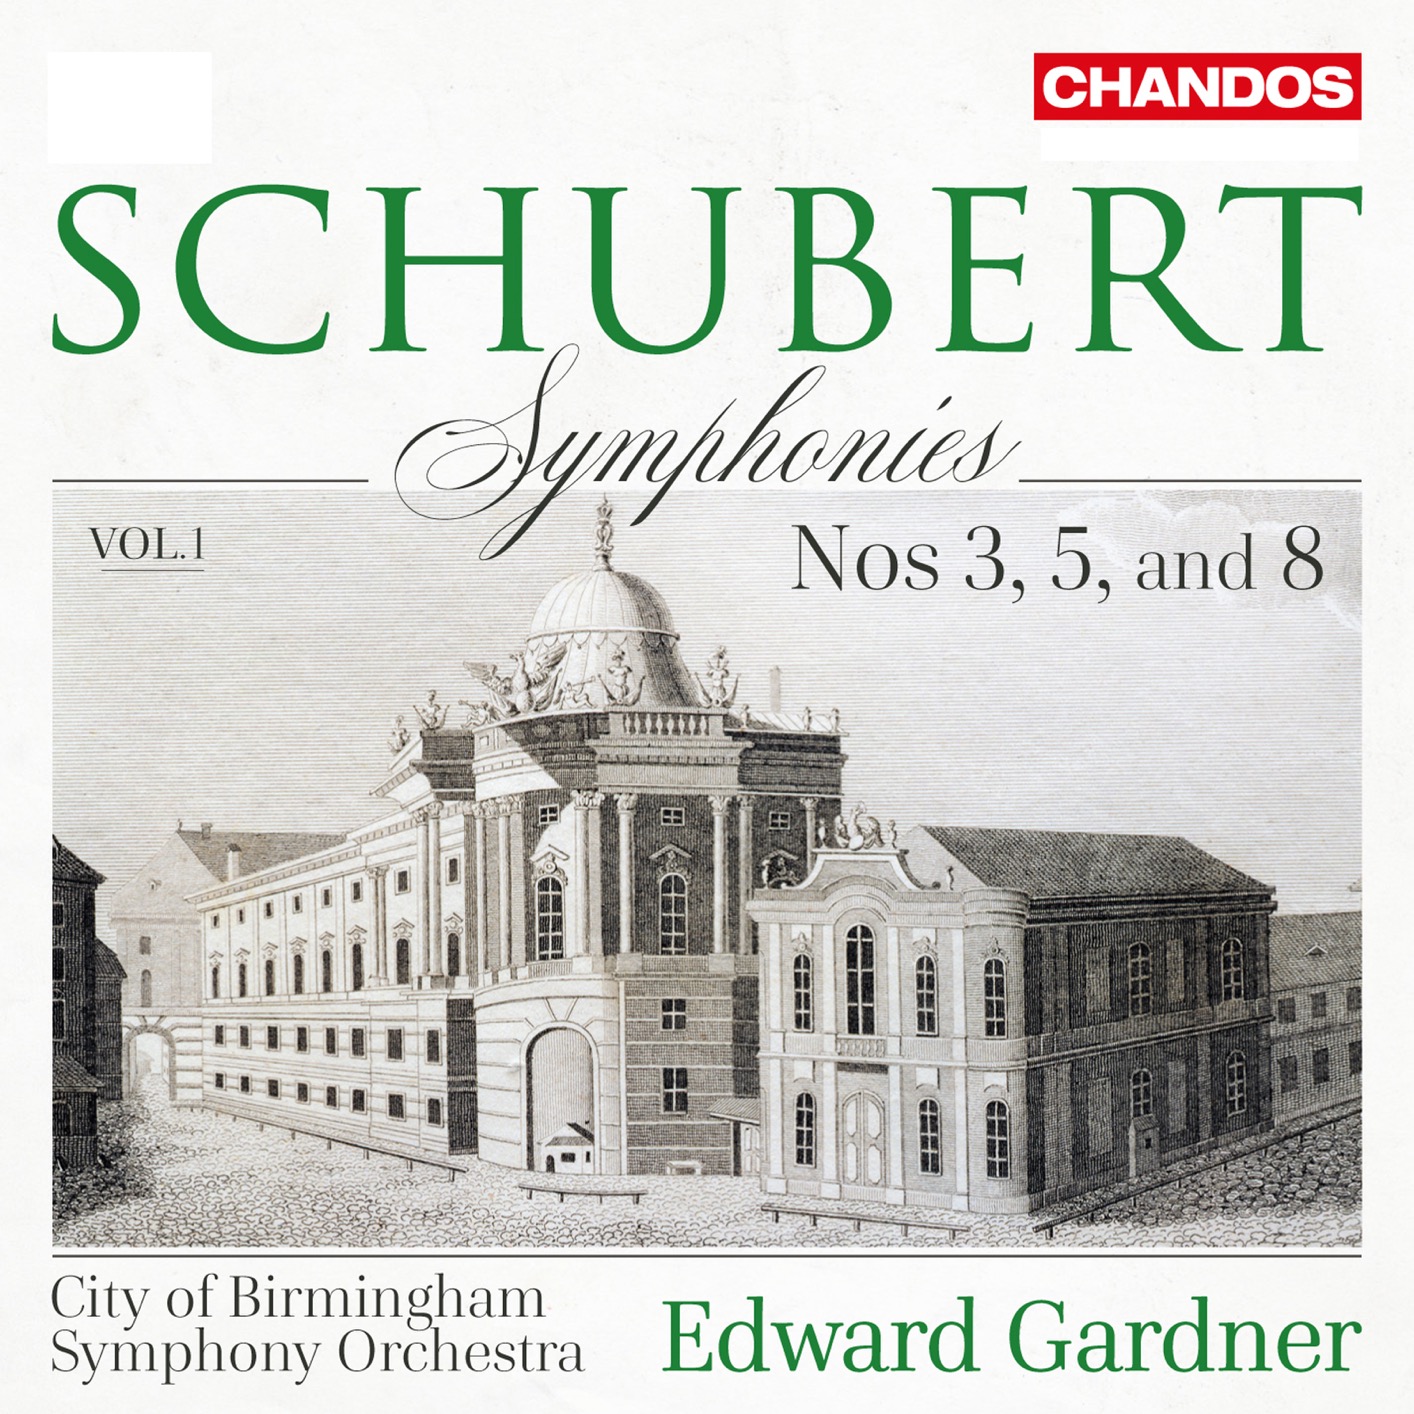 Edward Gardner - Schubert: Symphonies, Vol. 1 - Nos. 3, 5 & 8 (2019) [FLAC 24bit/96kHz]